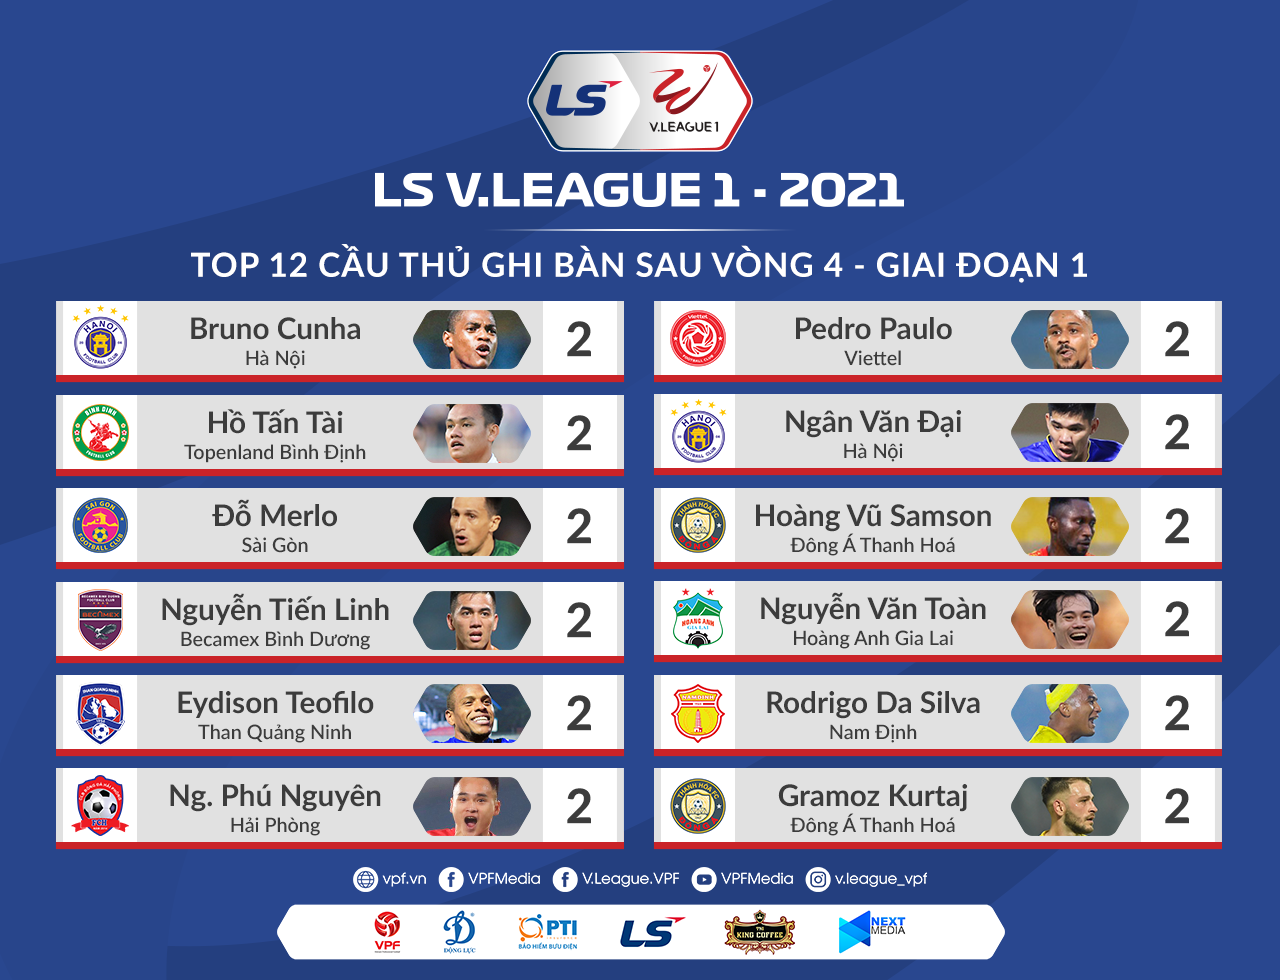 Hồ Tấn Tài là 1 trong 12 cầu thủ đã ghi 2 bàn sau 4 vòng đấu tại V.League 2021. Ảnh: VPF.